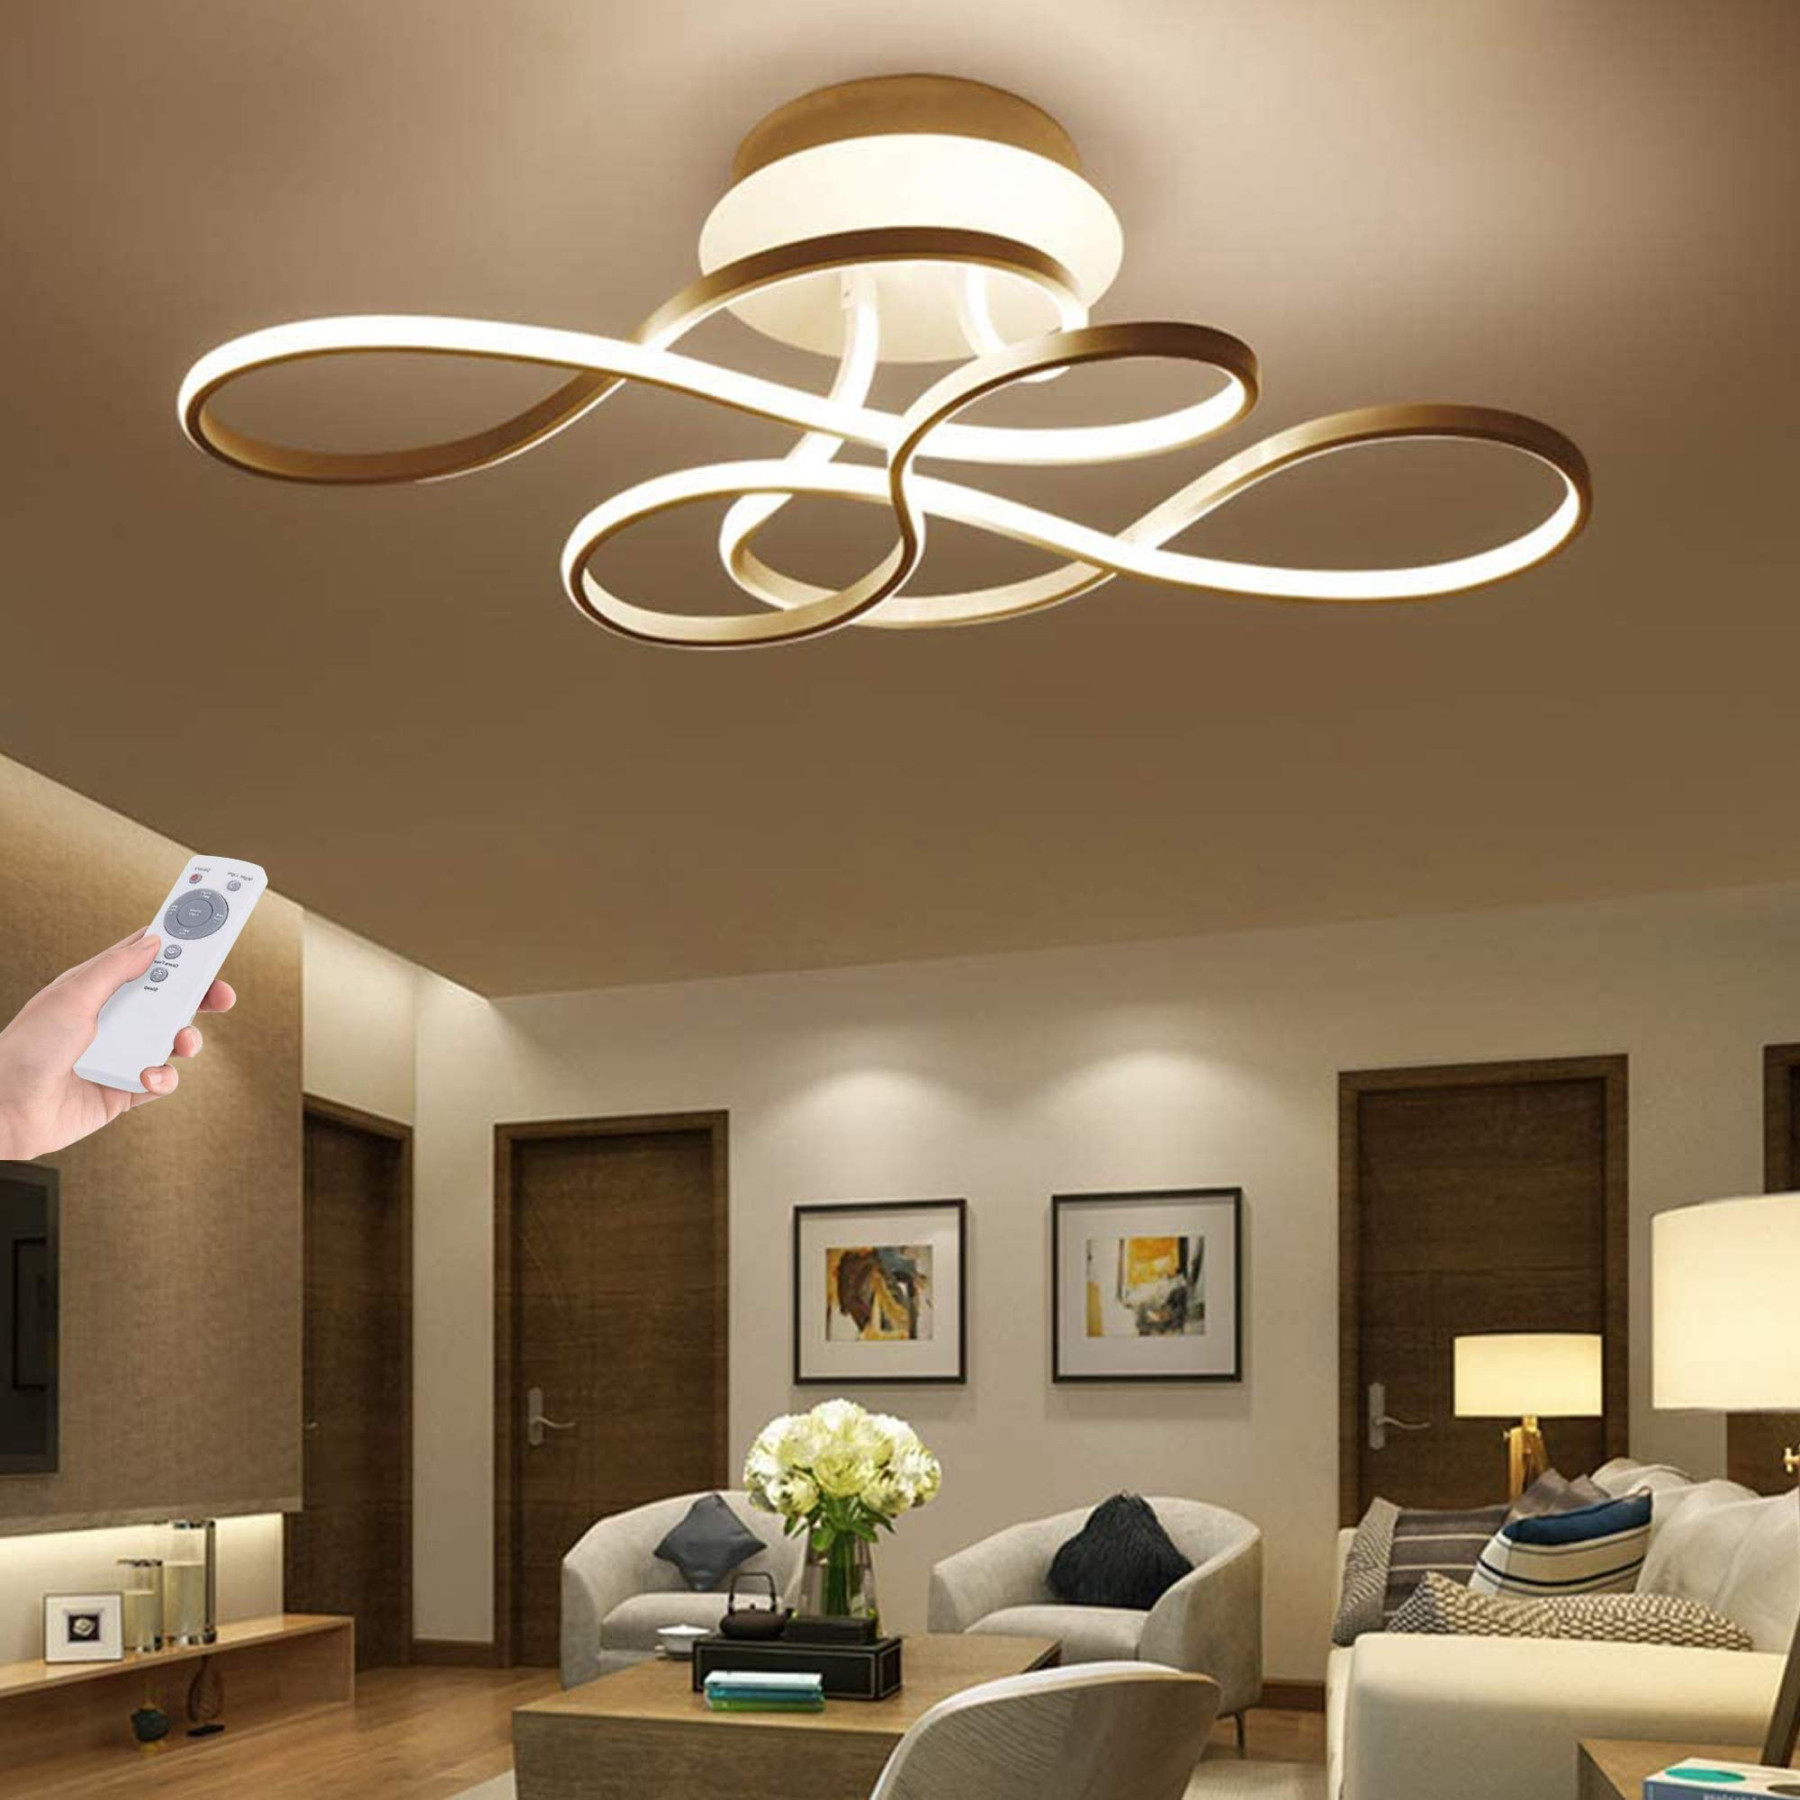 LED Deckenleuchte Wohnzimmerlampe Dimmbar Mit Fernbedienung Deckenlampe  W Modern Decke Schlafzimmerlampe Acryl Lampenschirm Aluminium Design  Lampe